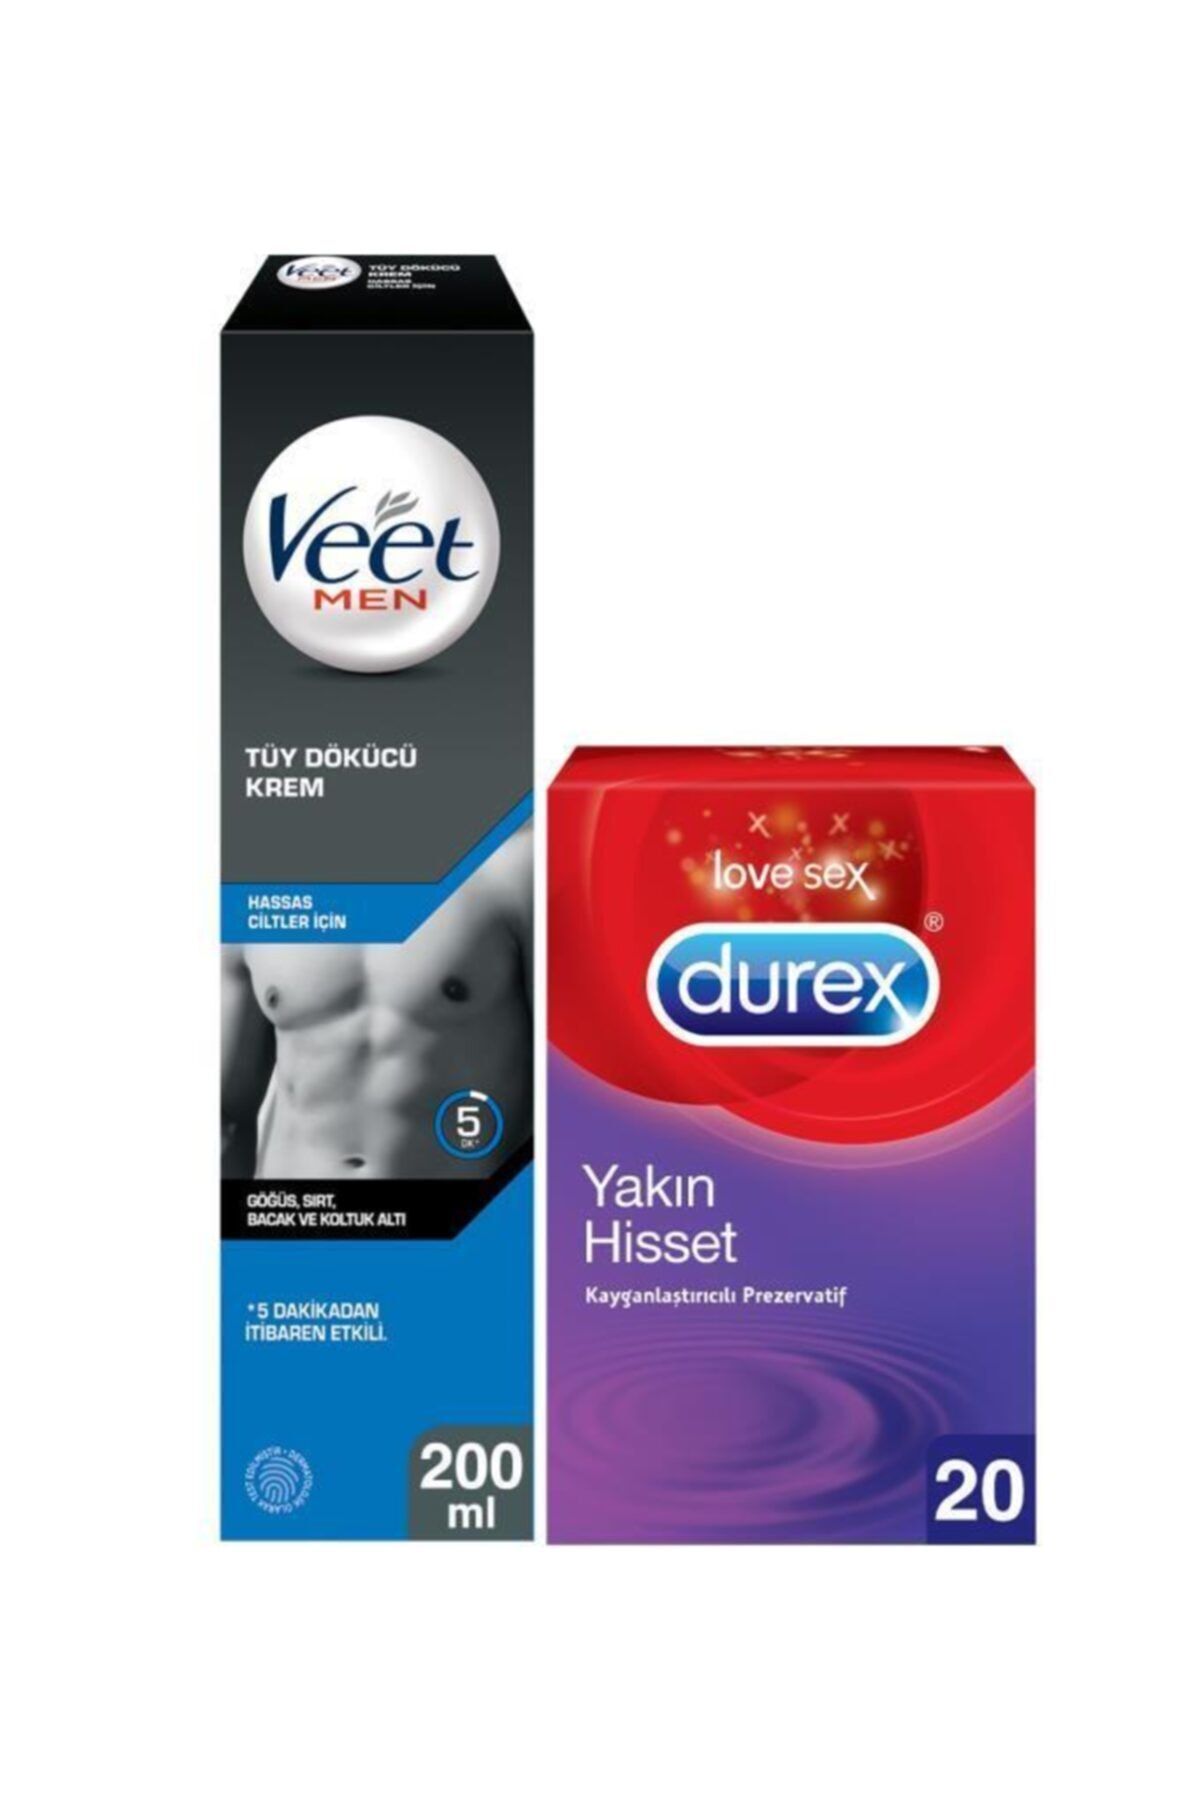 Veet Hassas Erkeklere Özel Tüy Dökücü Krem 200ml+Durex Yakın Hisset Kayganlaştırıcılı Prezervatif 20’li